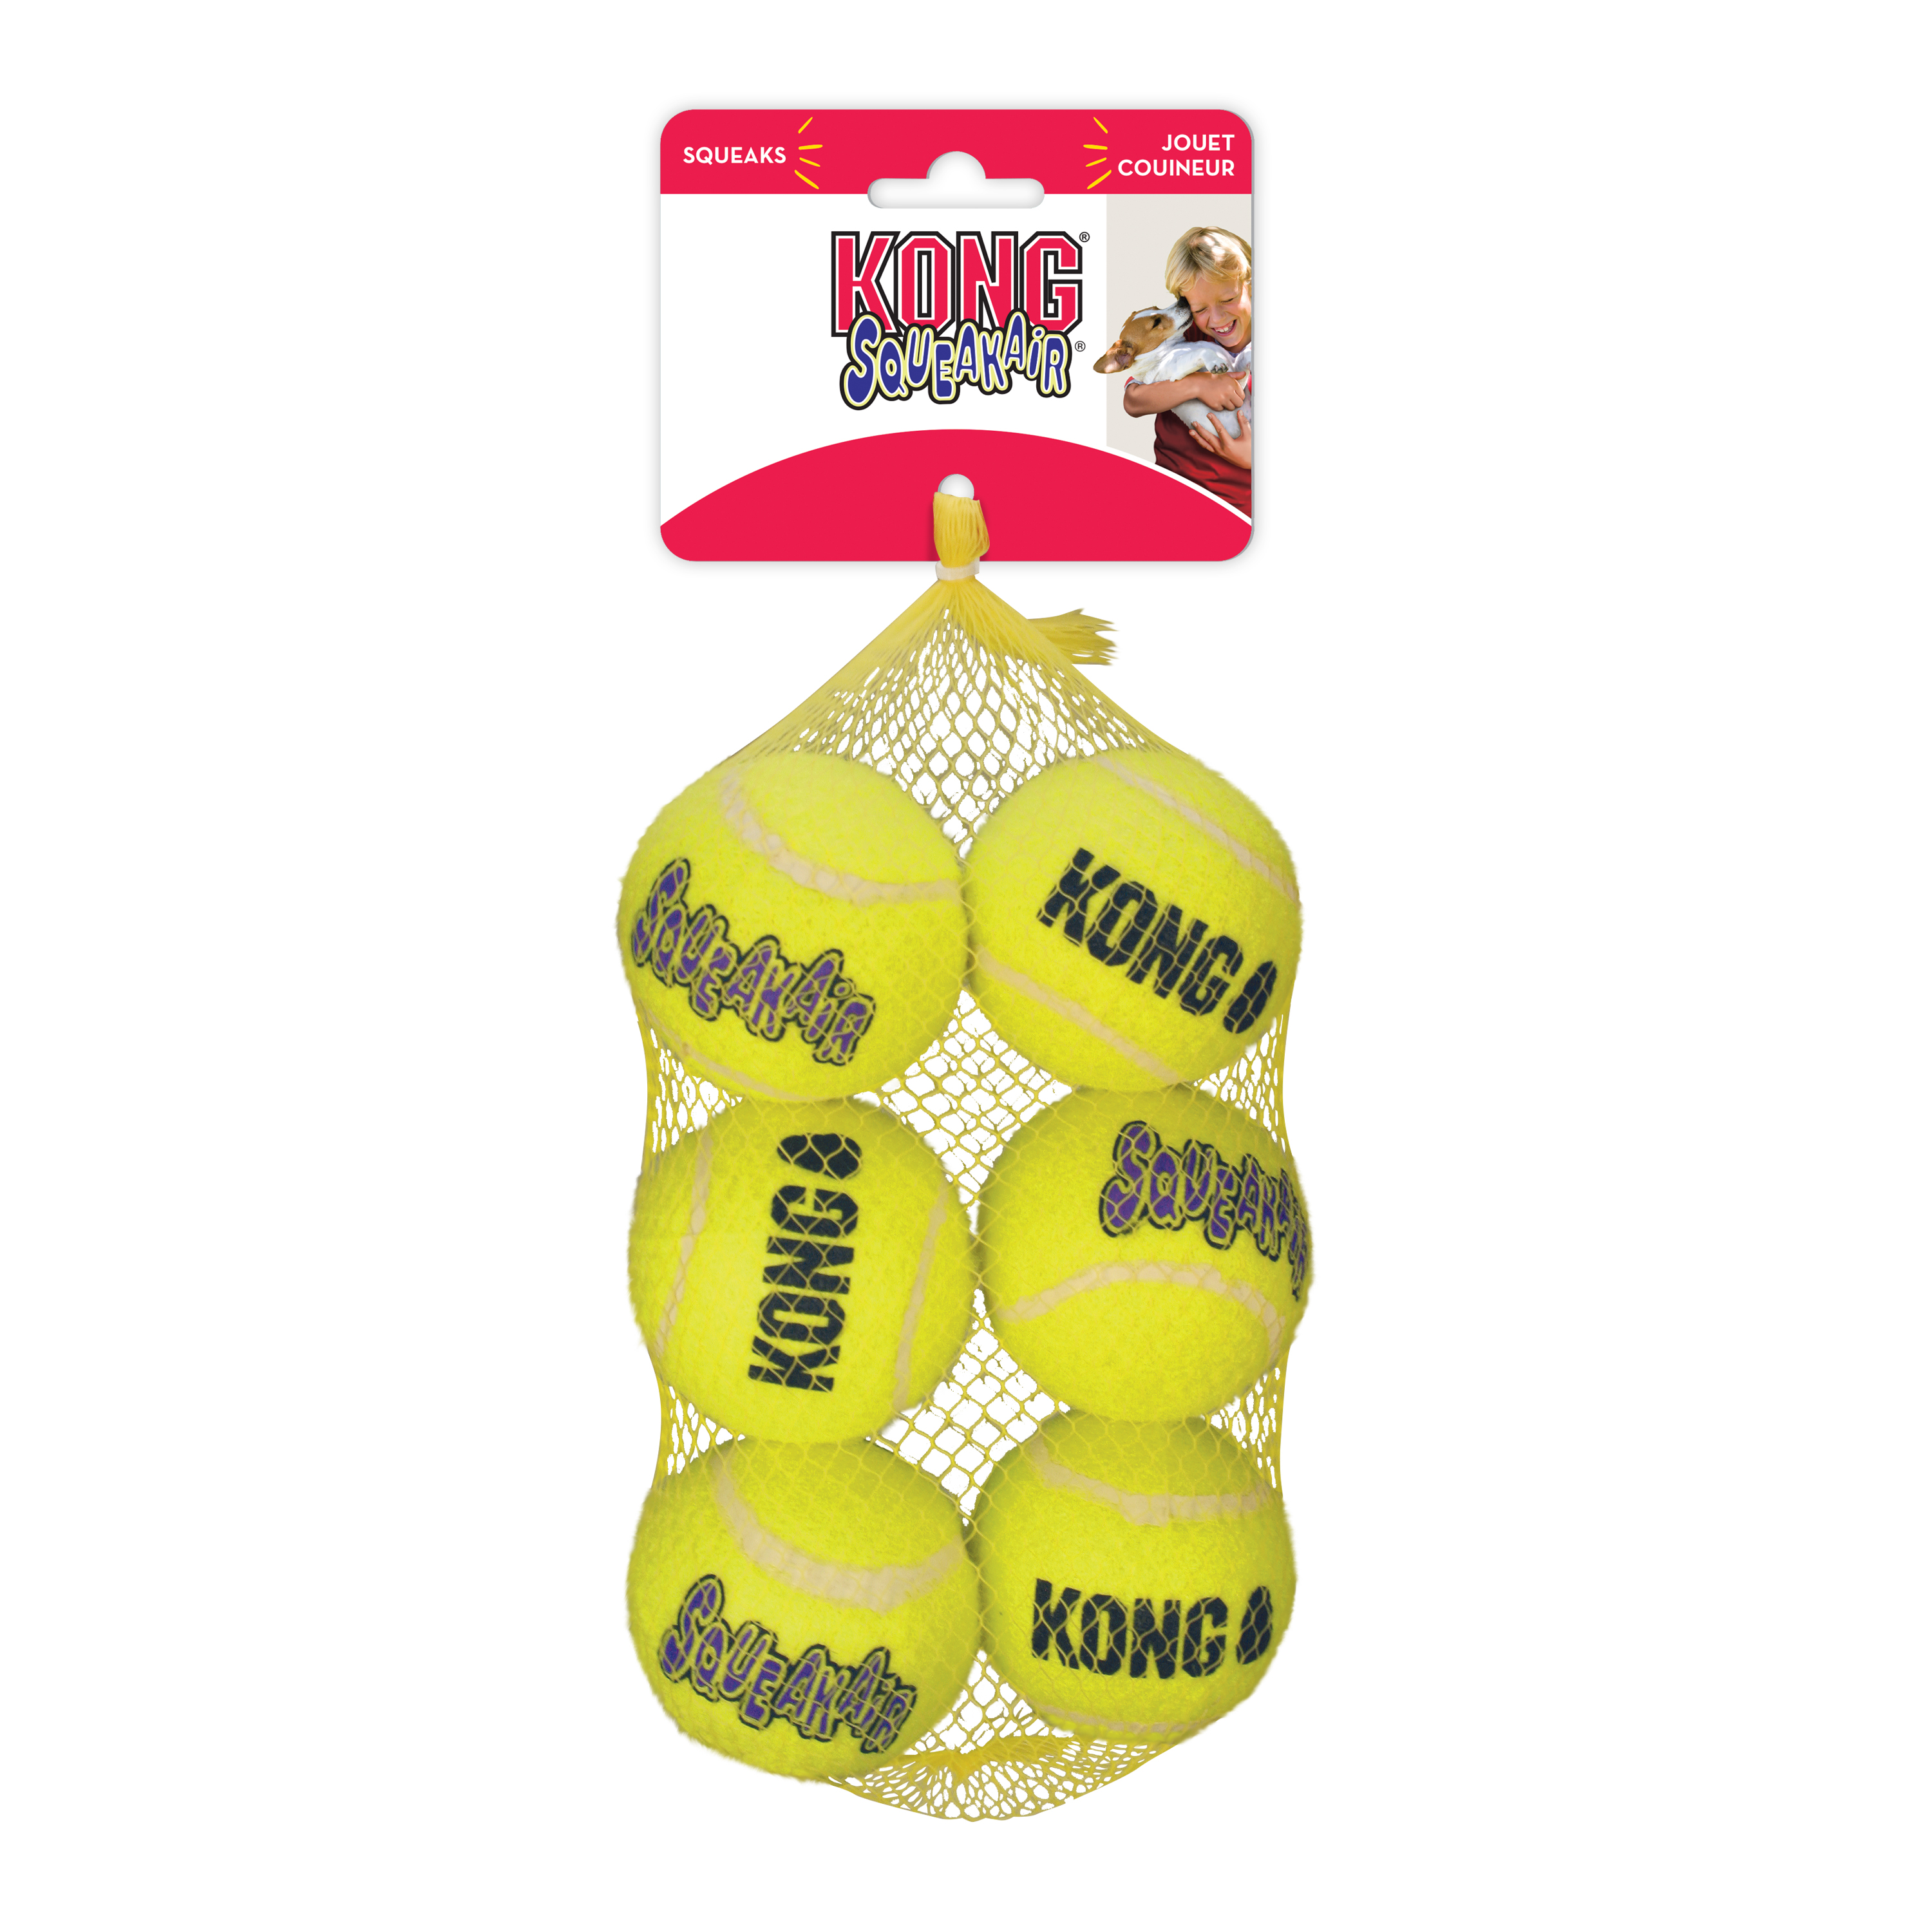 Mathis Verscherpen Buiten adem Kong squeakair balls 6-pack geel M- 6,4x6,4x6,4cm - Allesvooruwhuisdier